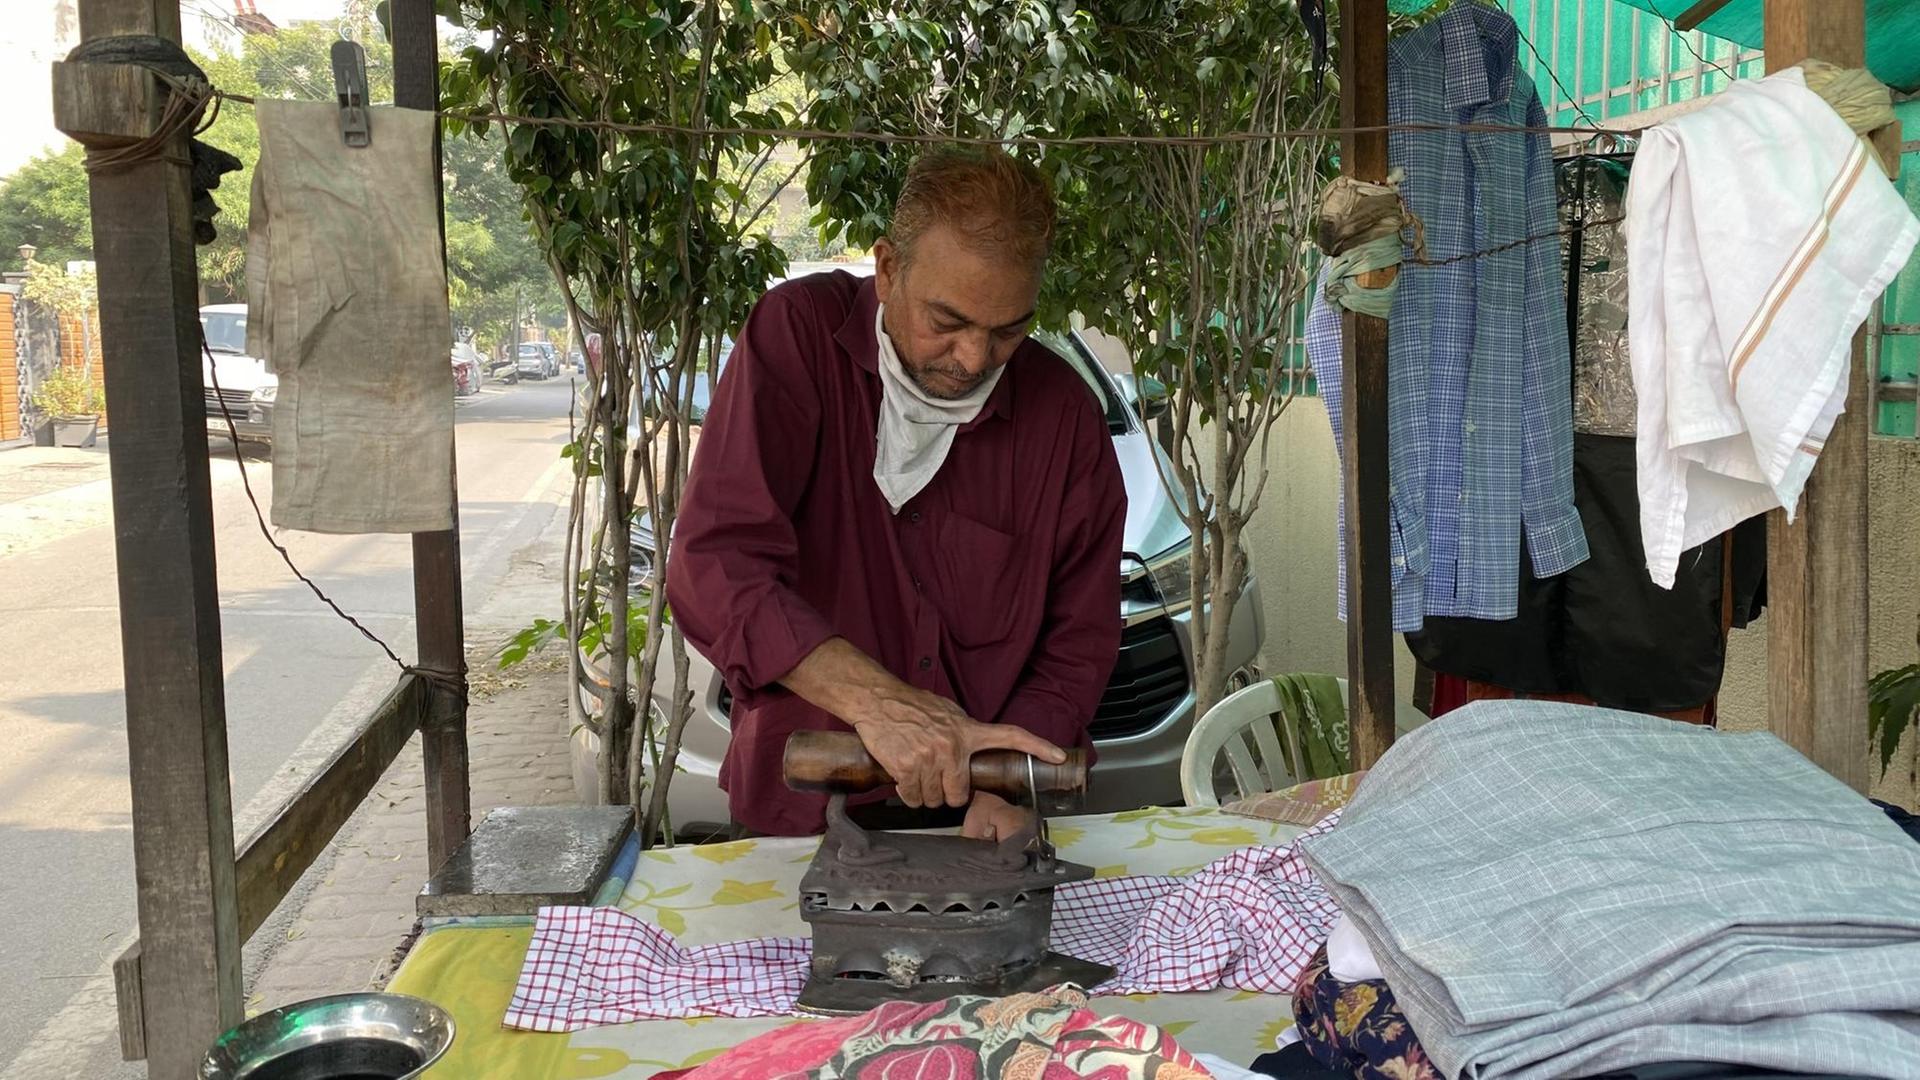 Ein Mann im roten Hemd bügelt mit einem schweren altmodischen Bügeleisen an einer Straße Kleidung.